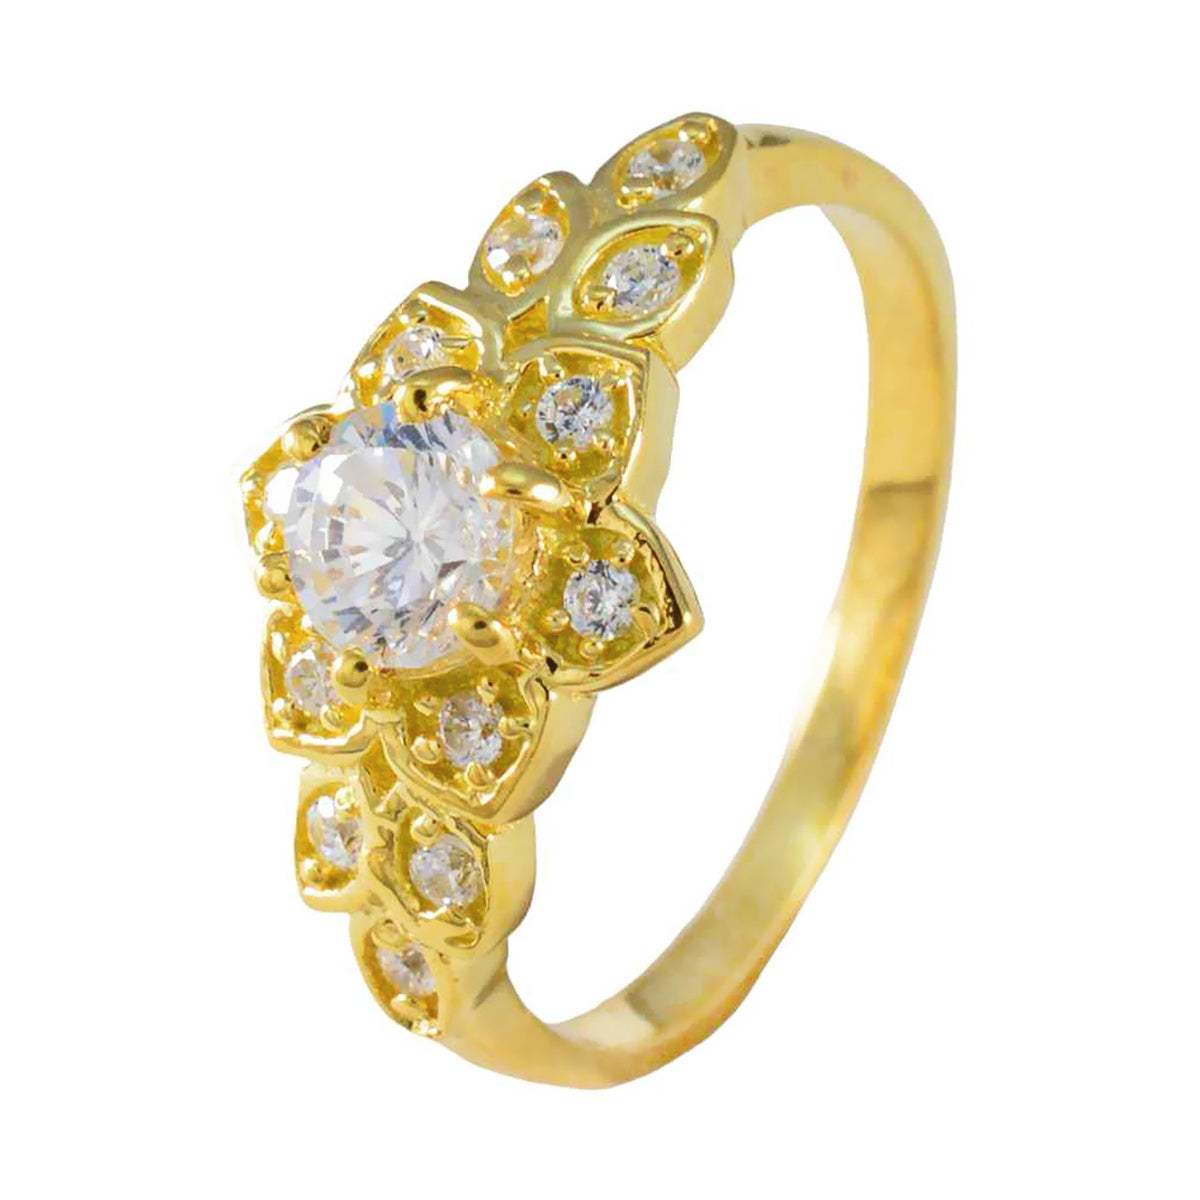 riyo önskvärd silverring med gul guldplätering vit cz sten rund form uttagsinställning snygg smycken nyårsring